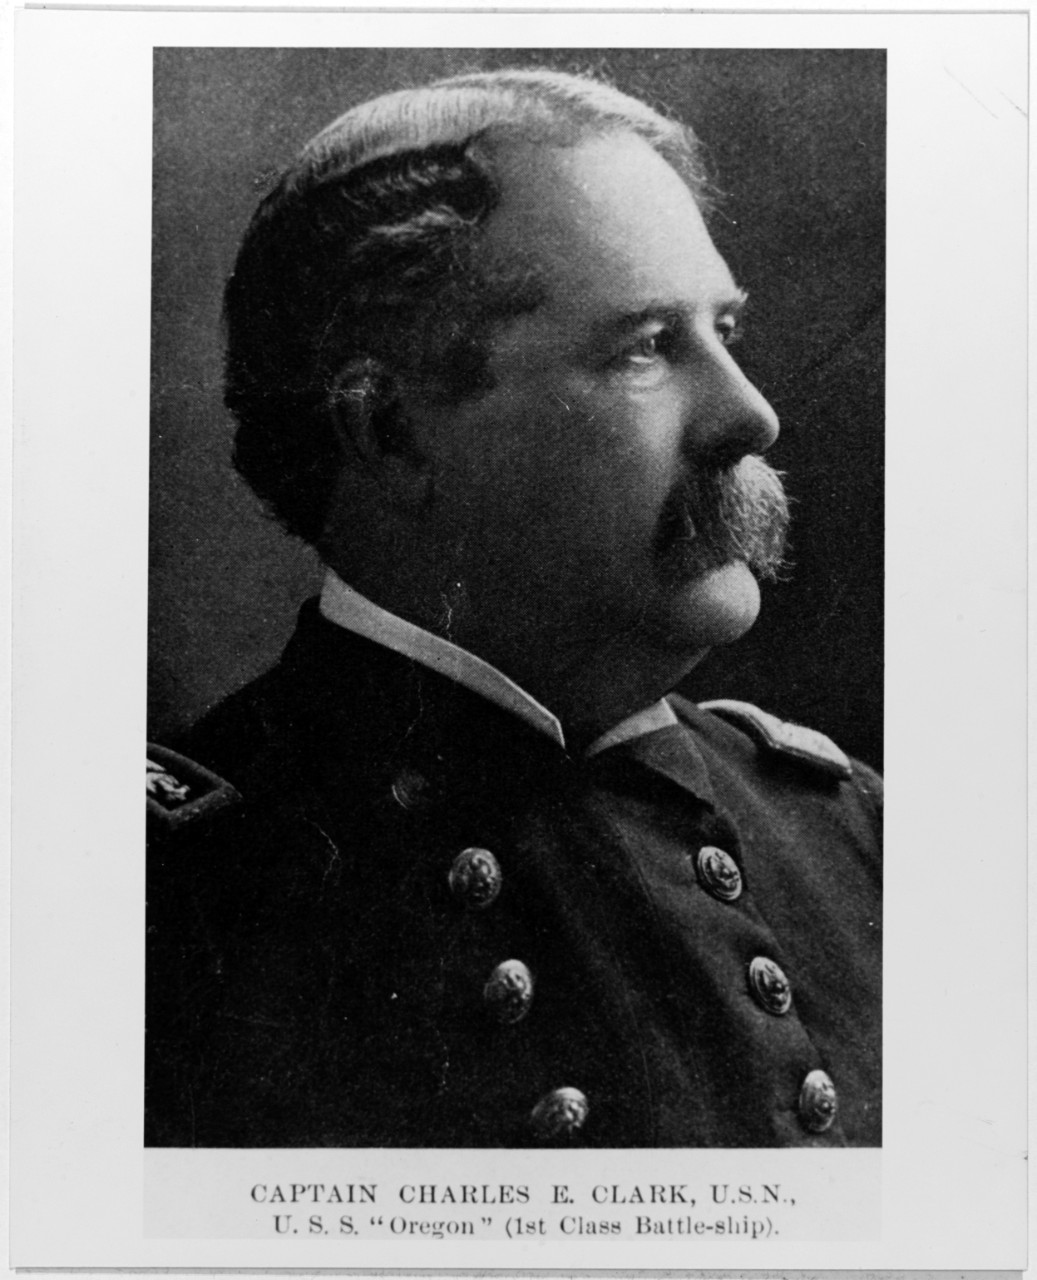 Charles E. Clark, Captain, USN